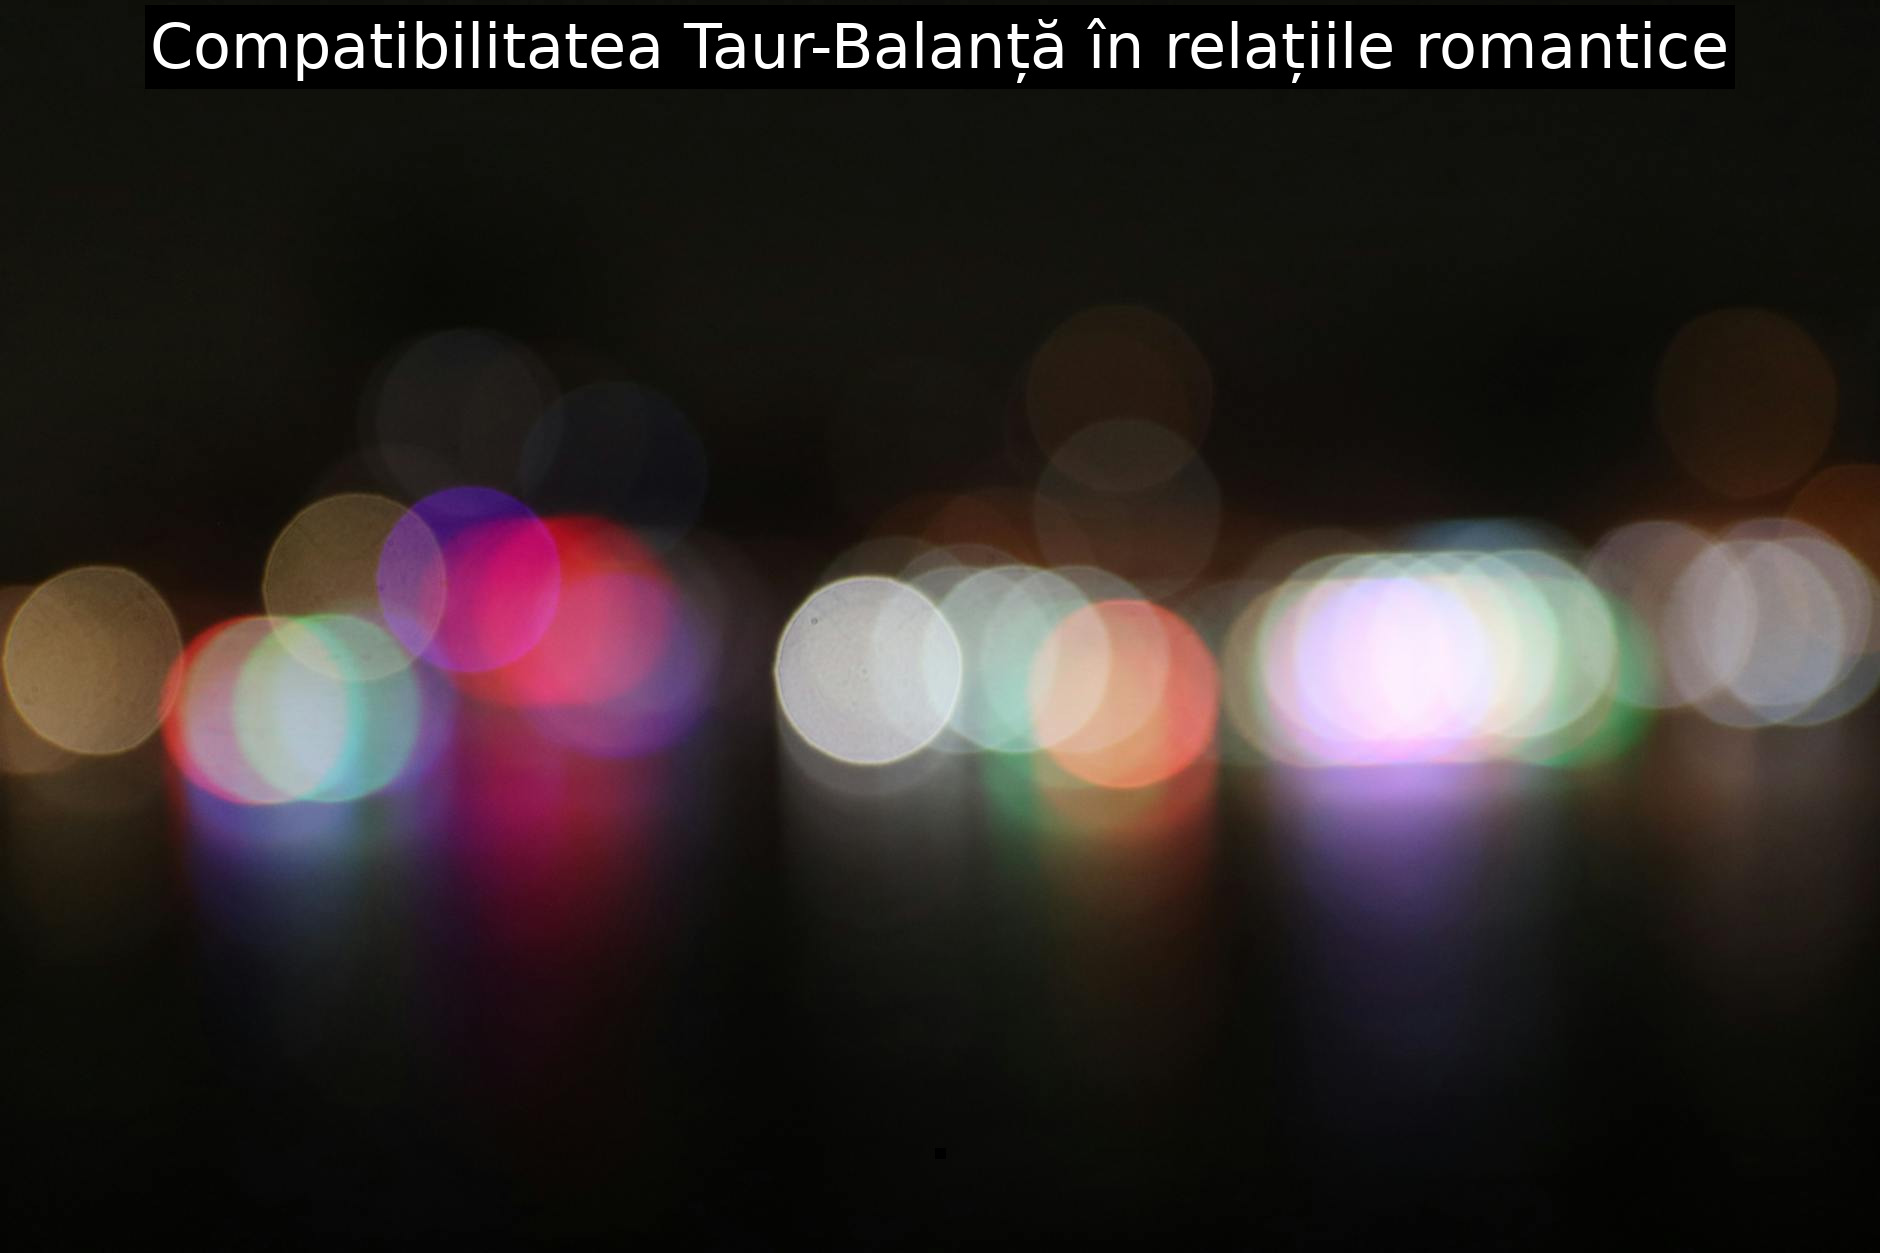 Compatibilitatea Taur-Balanță în relațiile romantice